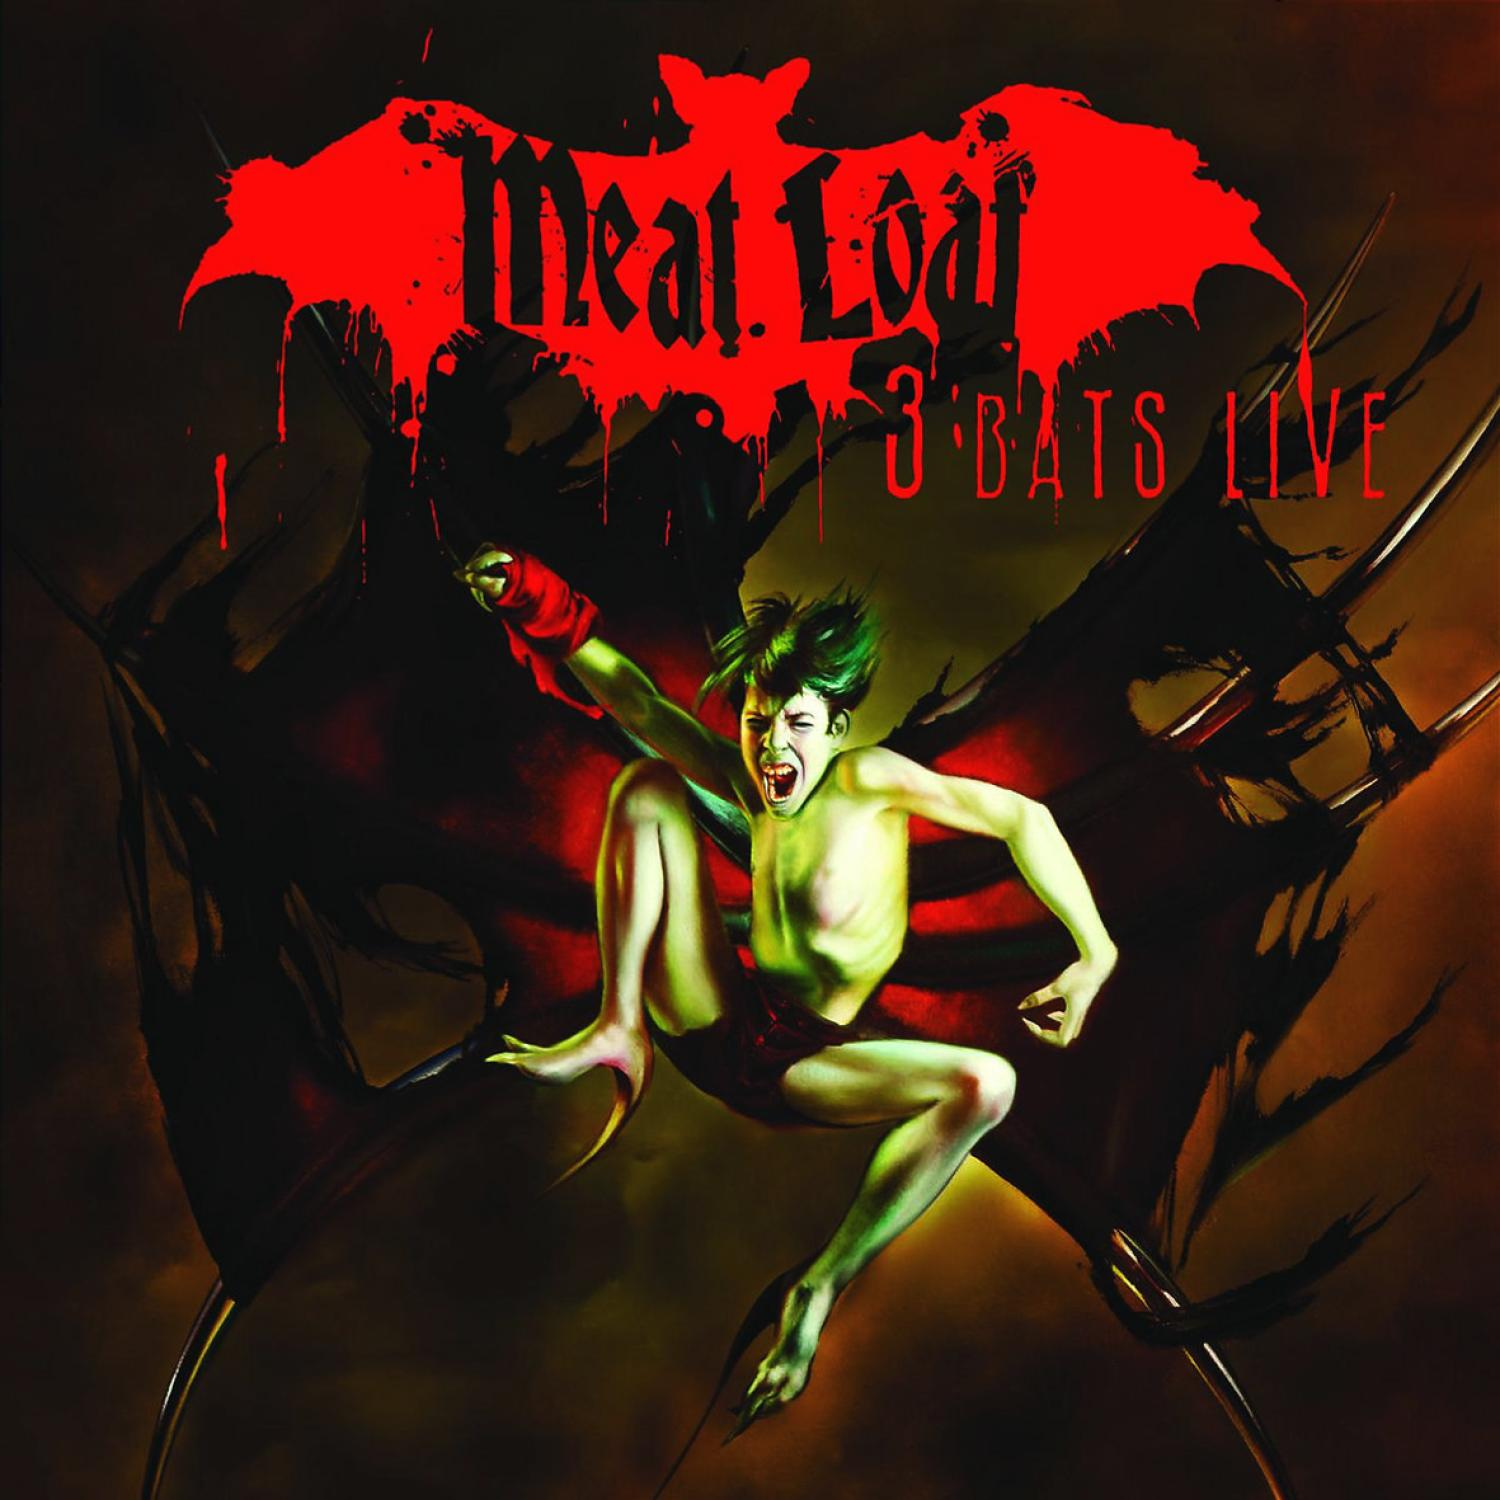 - Loaf (CD) Live Meat 3 - Bats